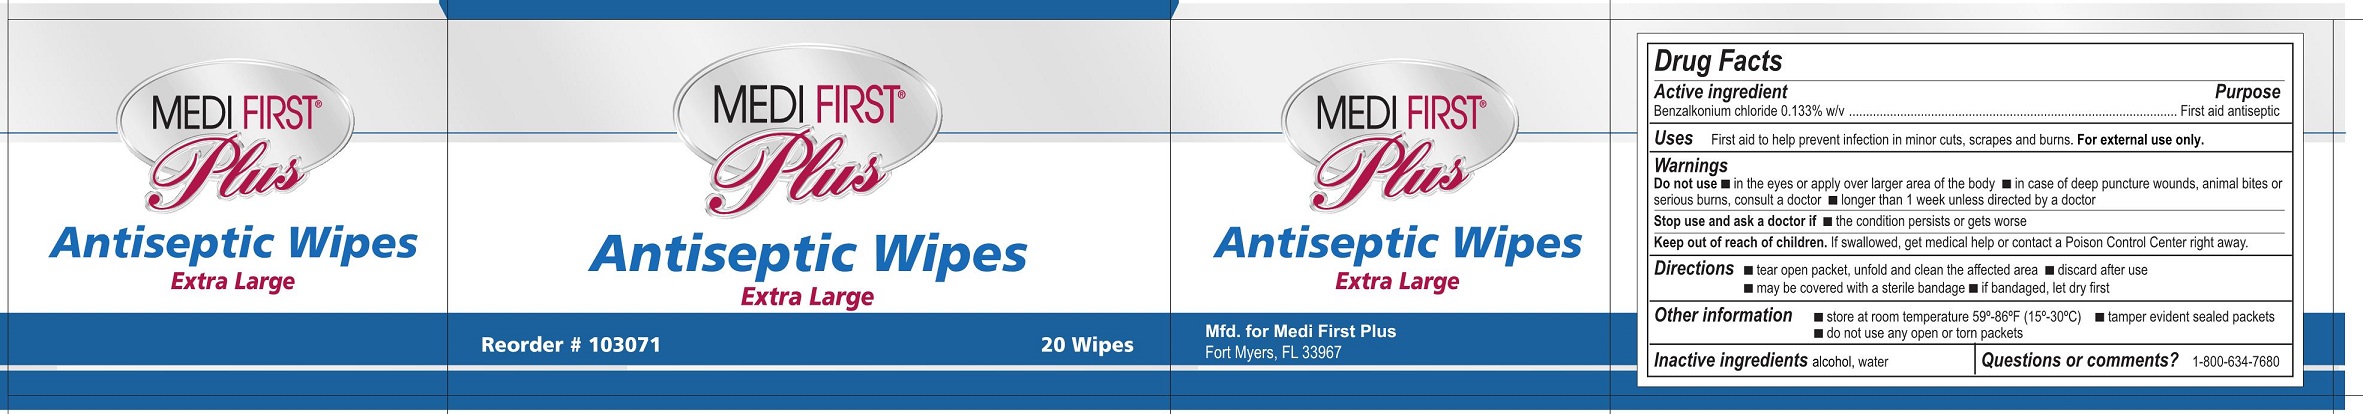 MFP Antiseptic Wipes